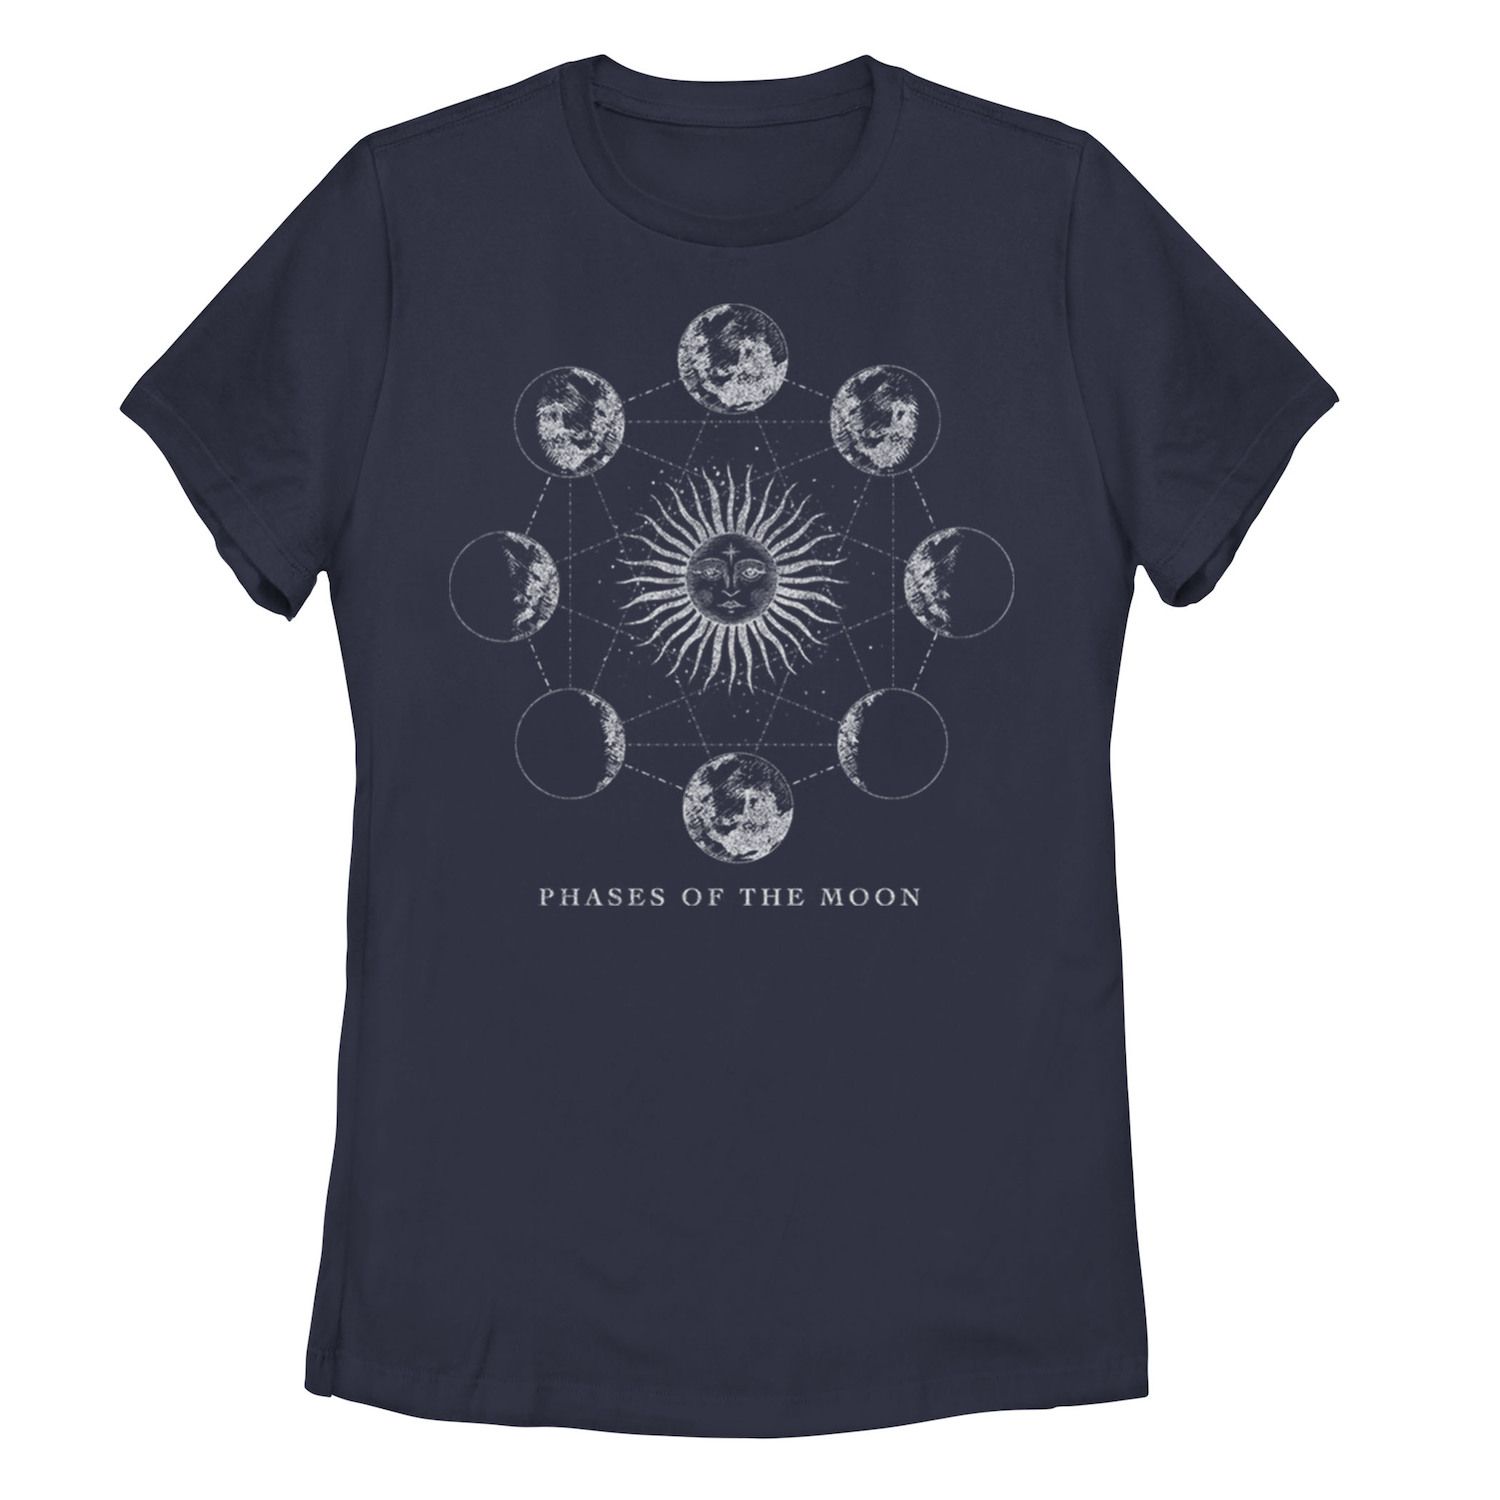 Детская футболка с рисунком «Фазы Луны»